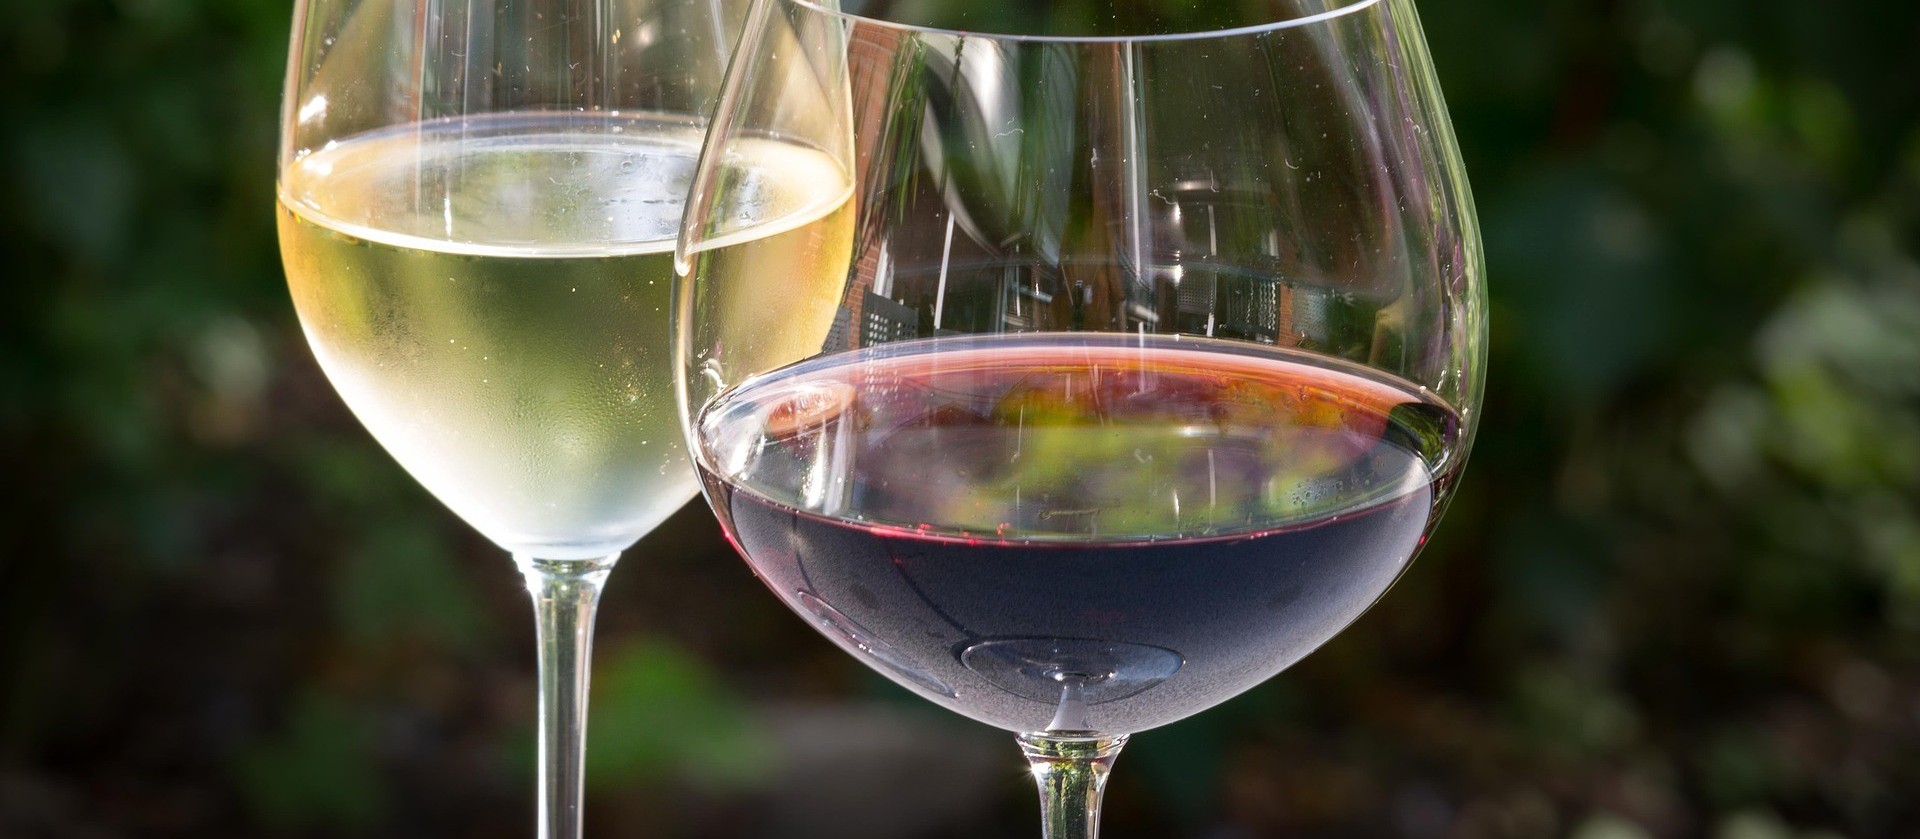 O que significa para uma marca de vinho ser premiada na GPVB?